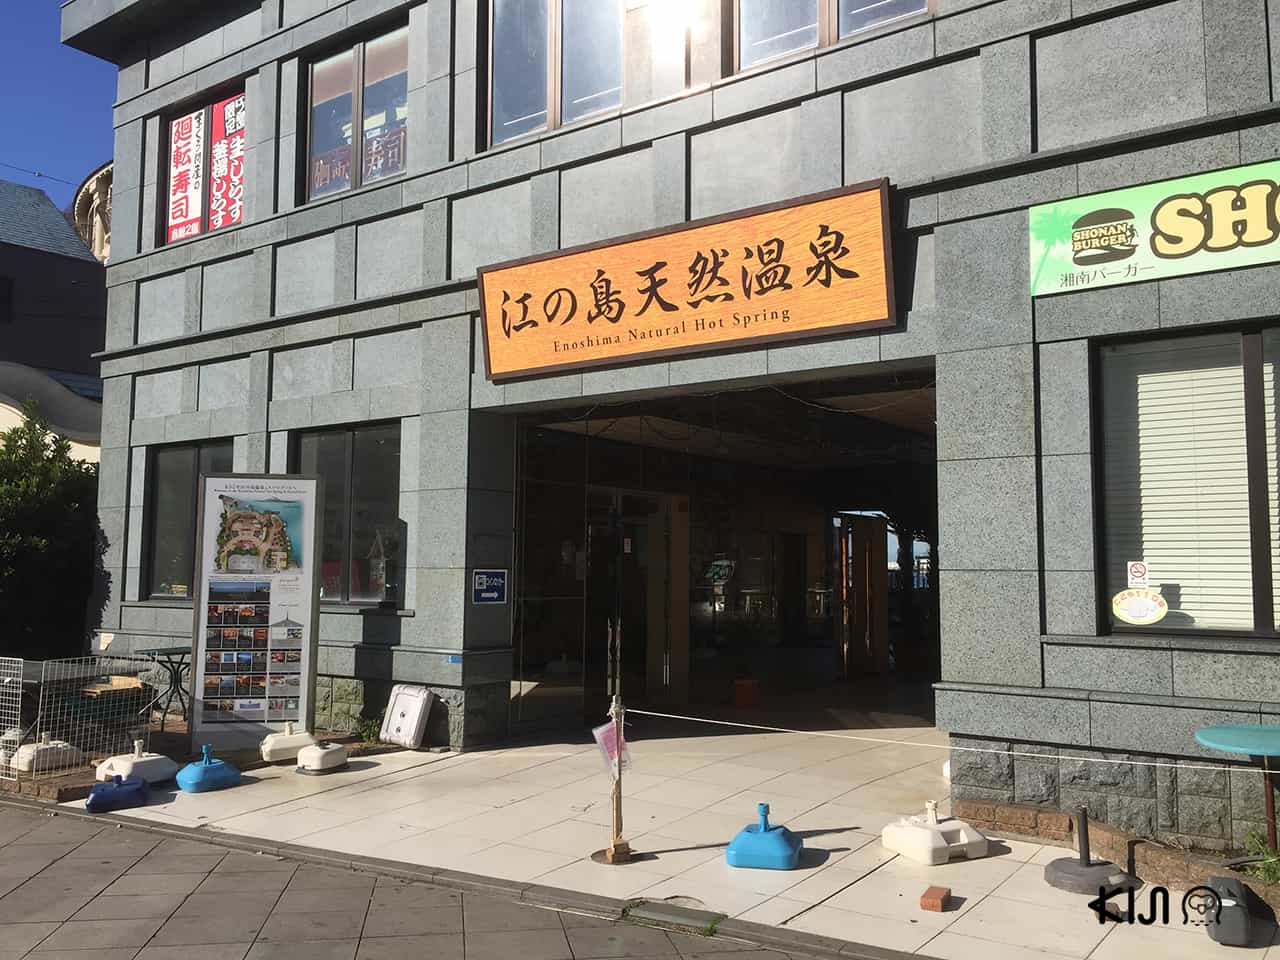 Enoshima Spa